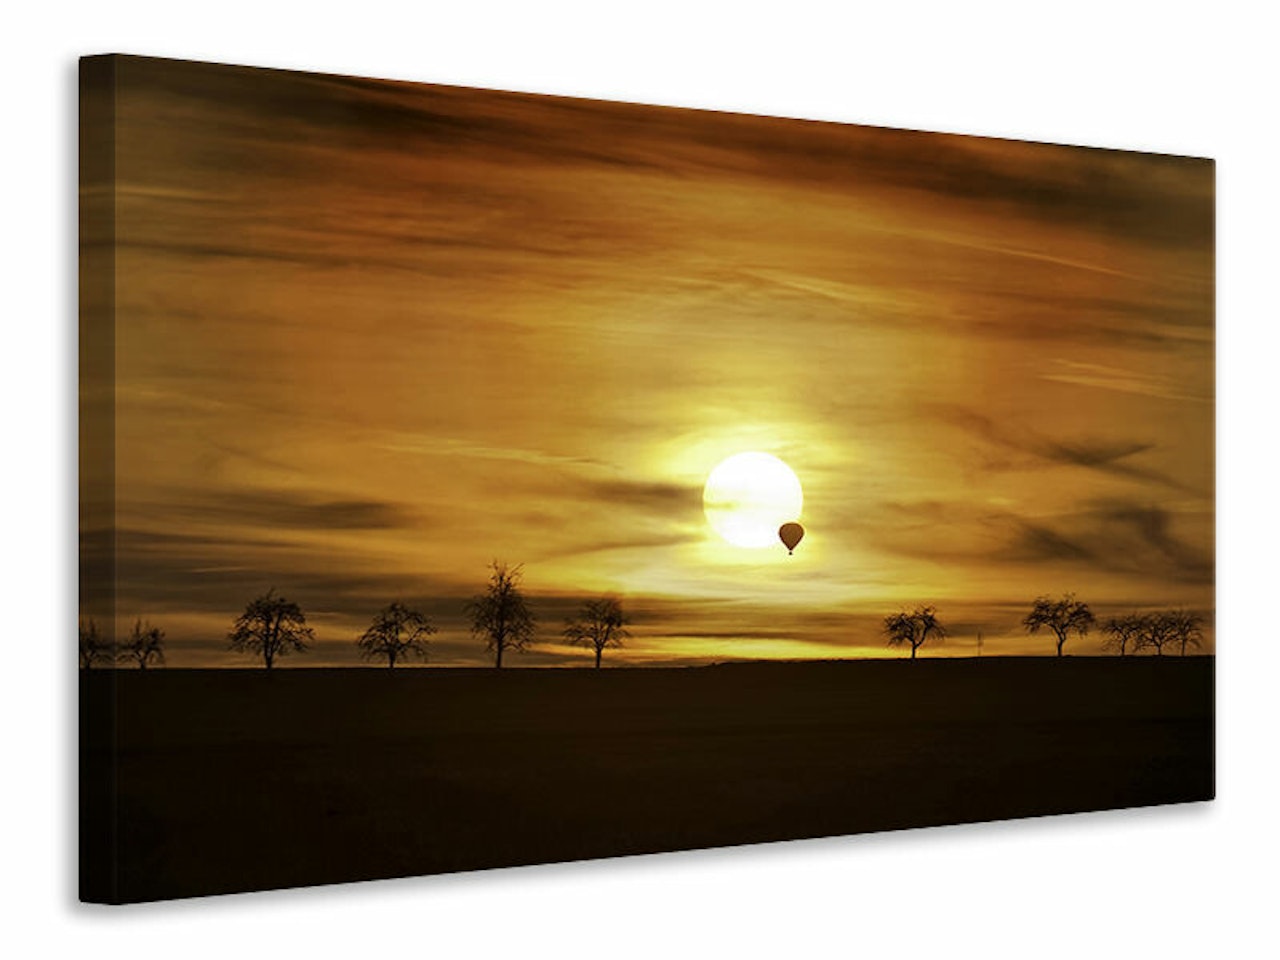 Ljuddämpande tavla - sunset with hot air balloon